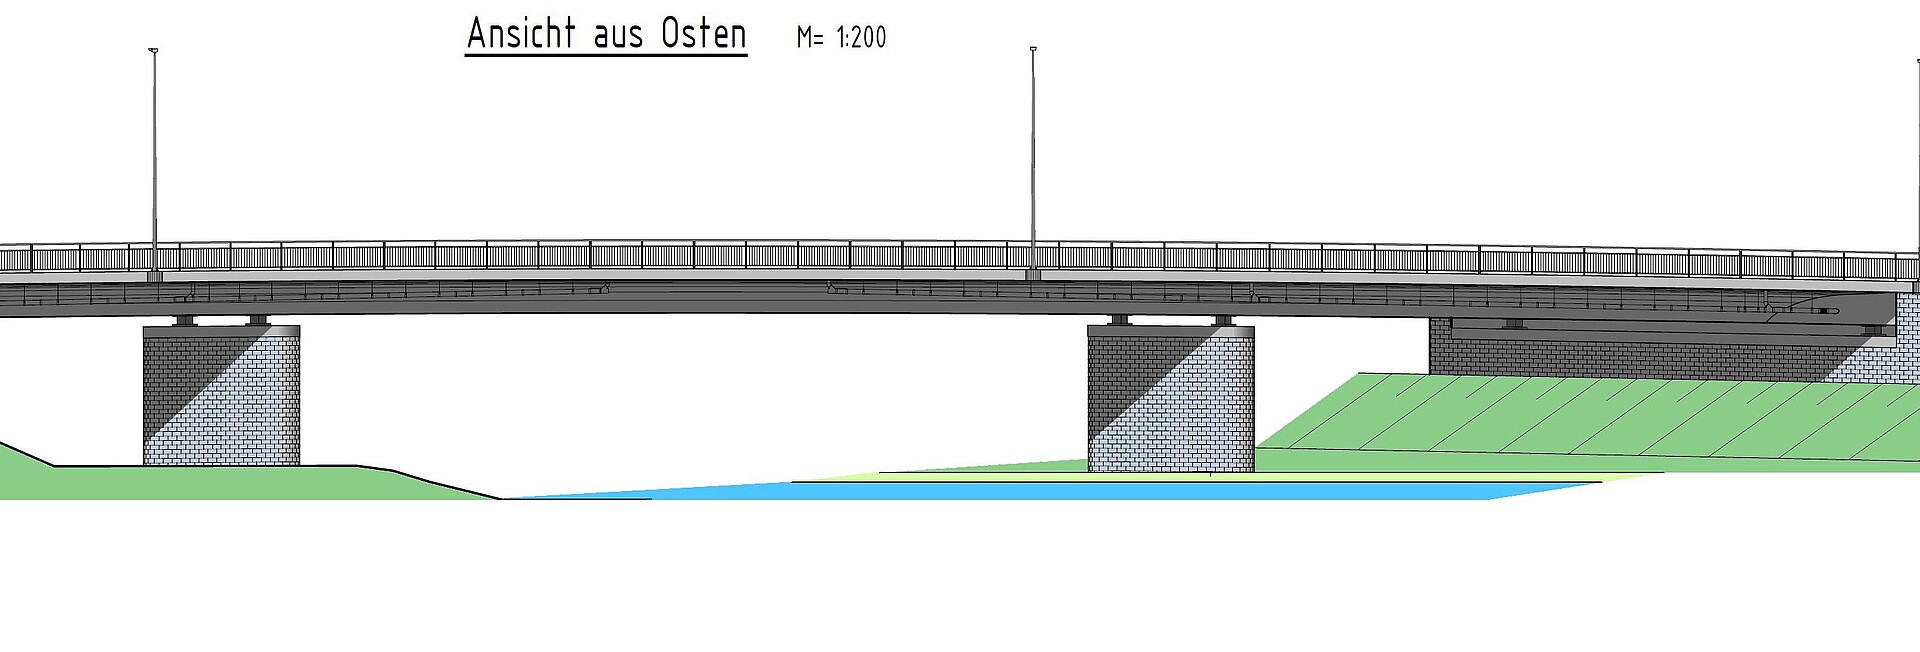 B 27 Ersatzneubau der Unteren Enzbrücke in Besigheim